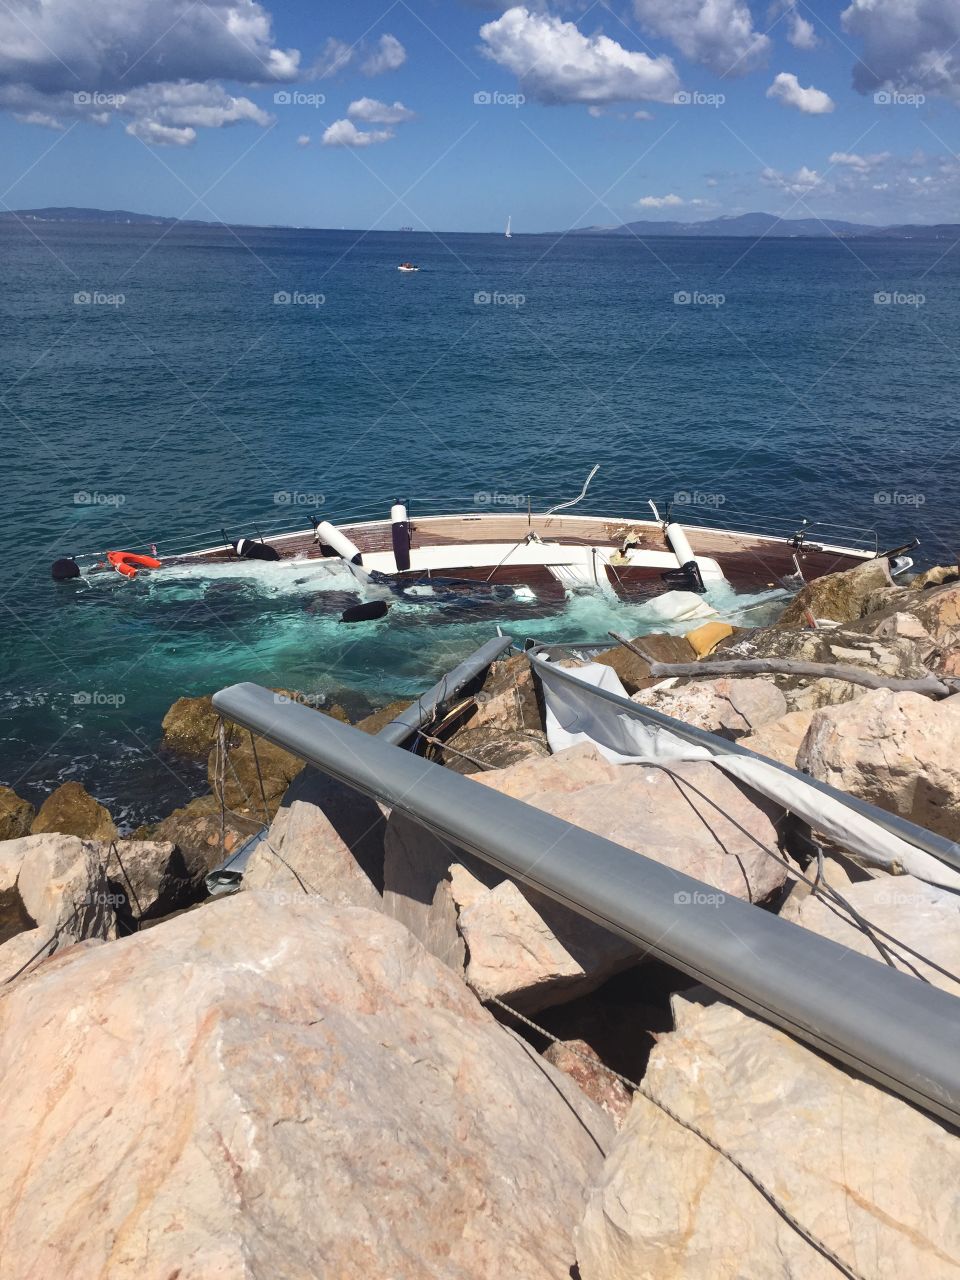 Abandoned sailboat crashed on rocks 